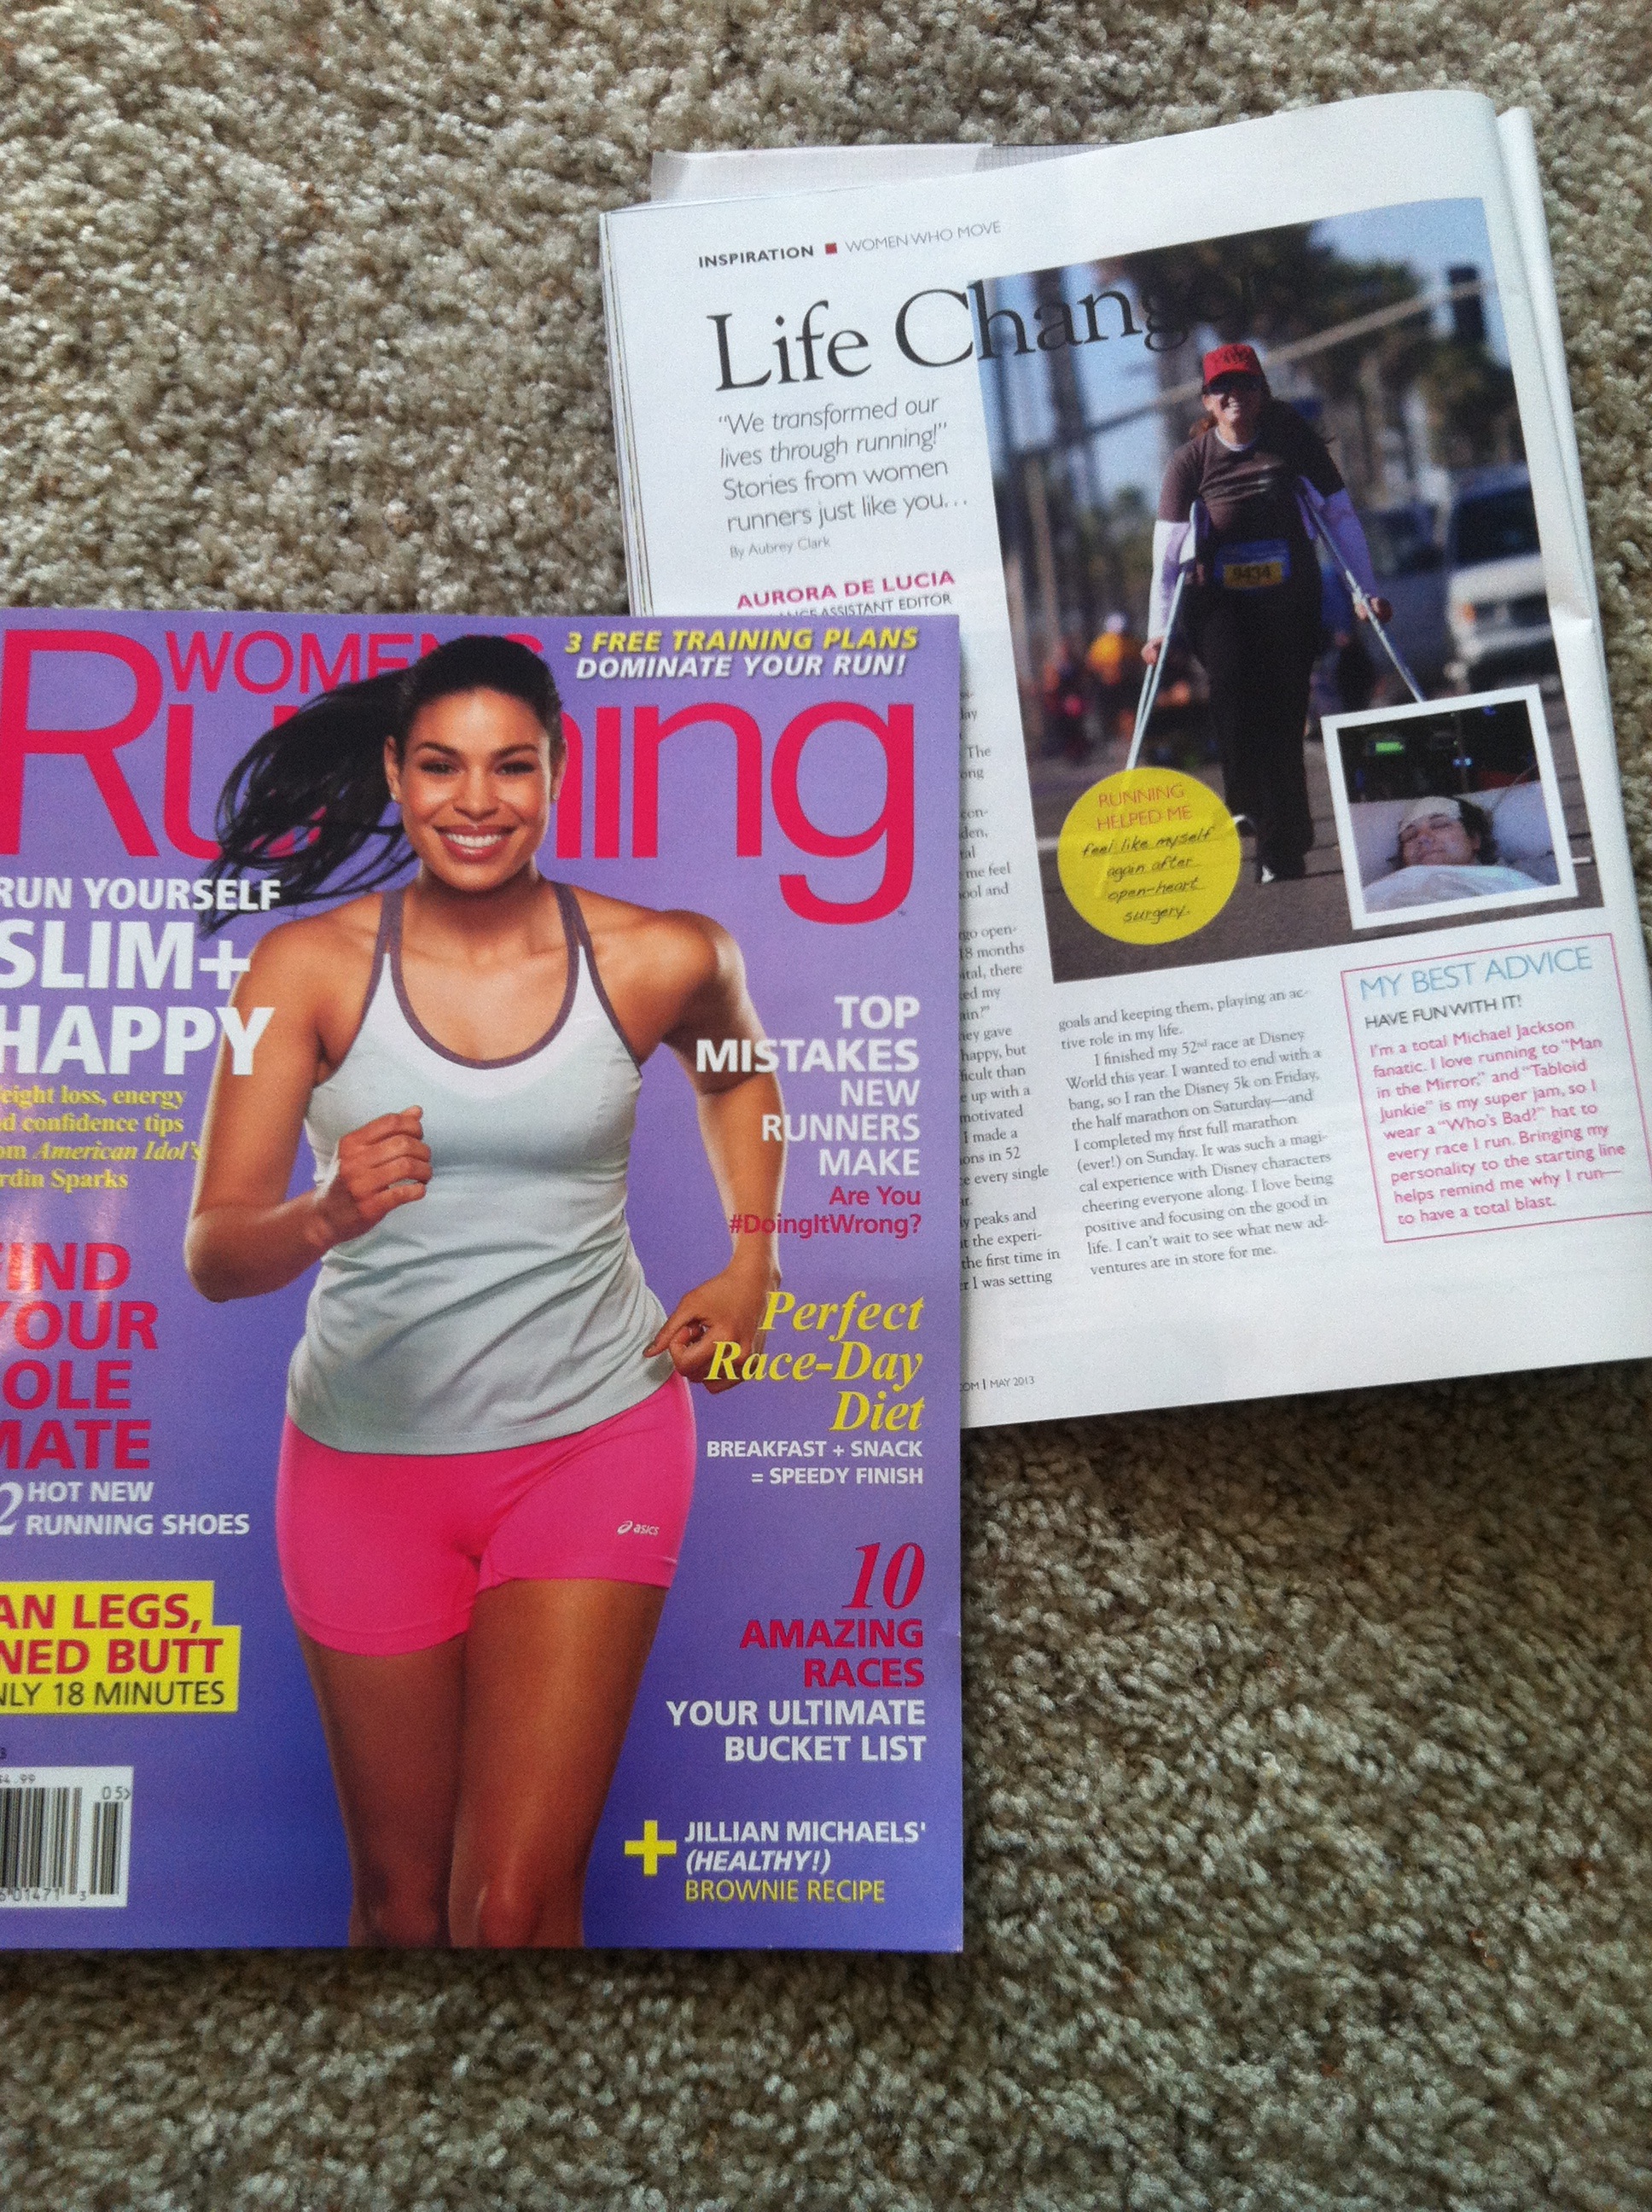 Aurora De Lucia in Women's Running Magazine